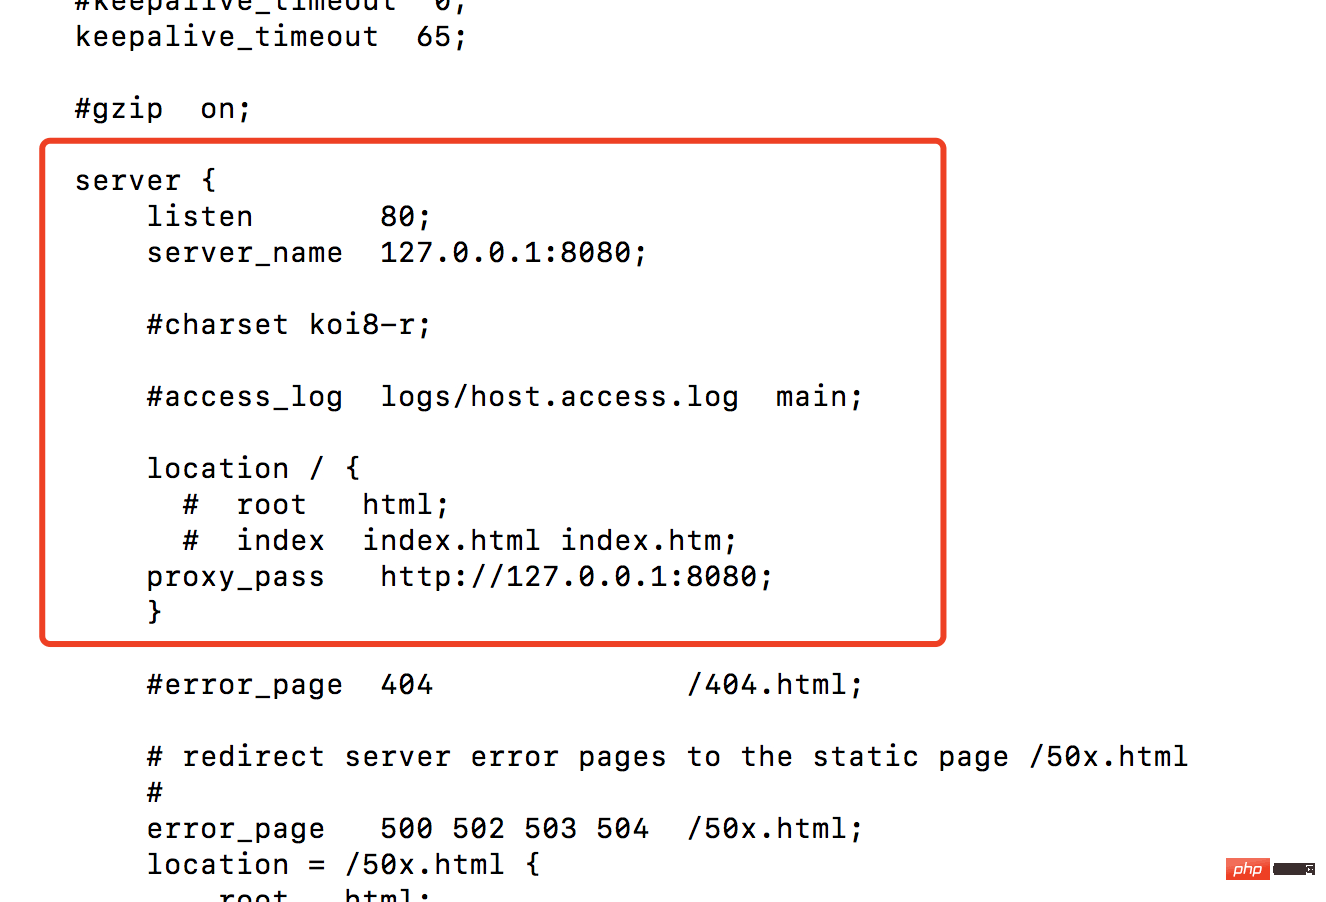 Nginx を使用して Mac でポート 80 をポート 8080 に転送する方法